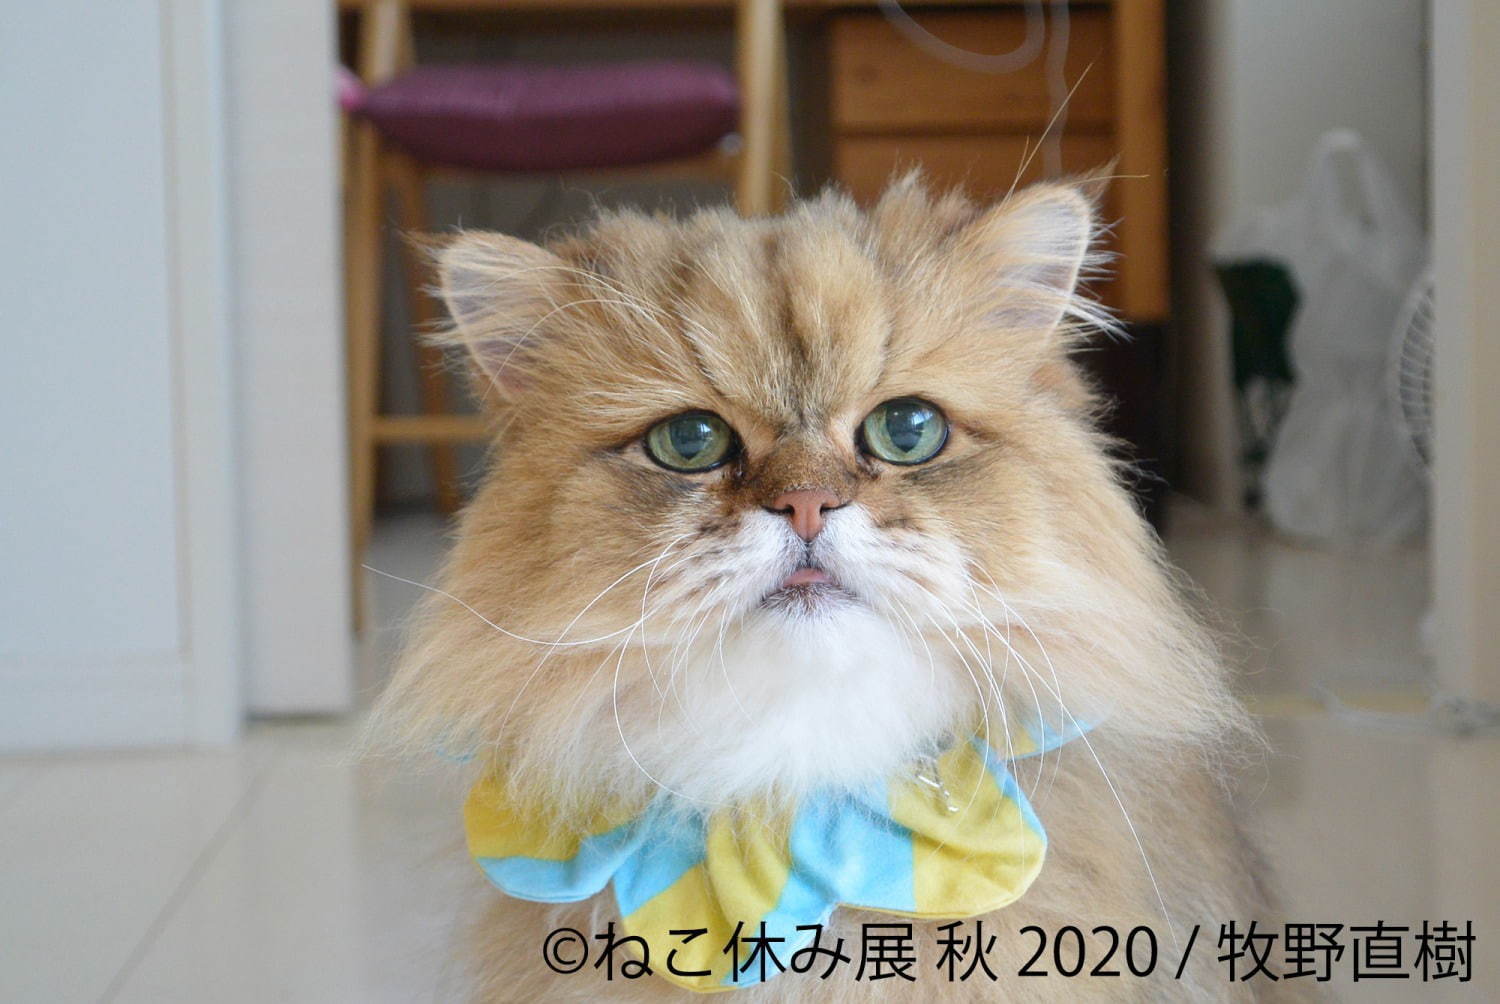 「ねこ休み展 秋 2020」名古屋で、新スター猫の写真展示＆猫アクセサリーの販売など｜写真13